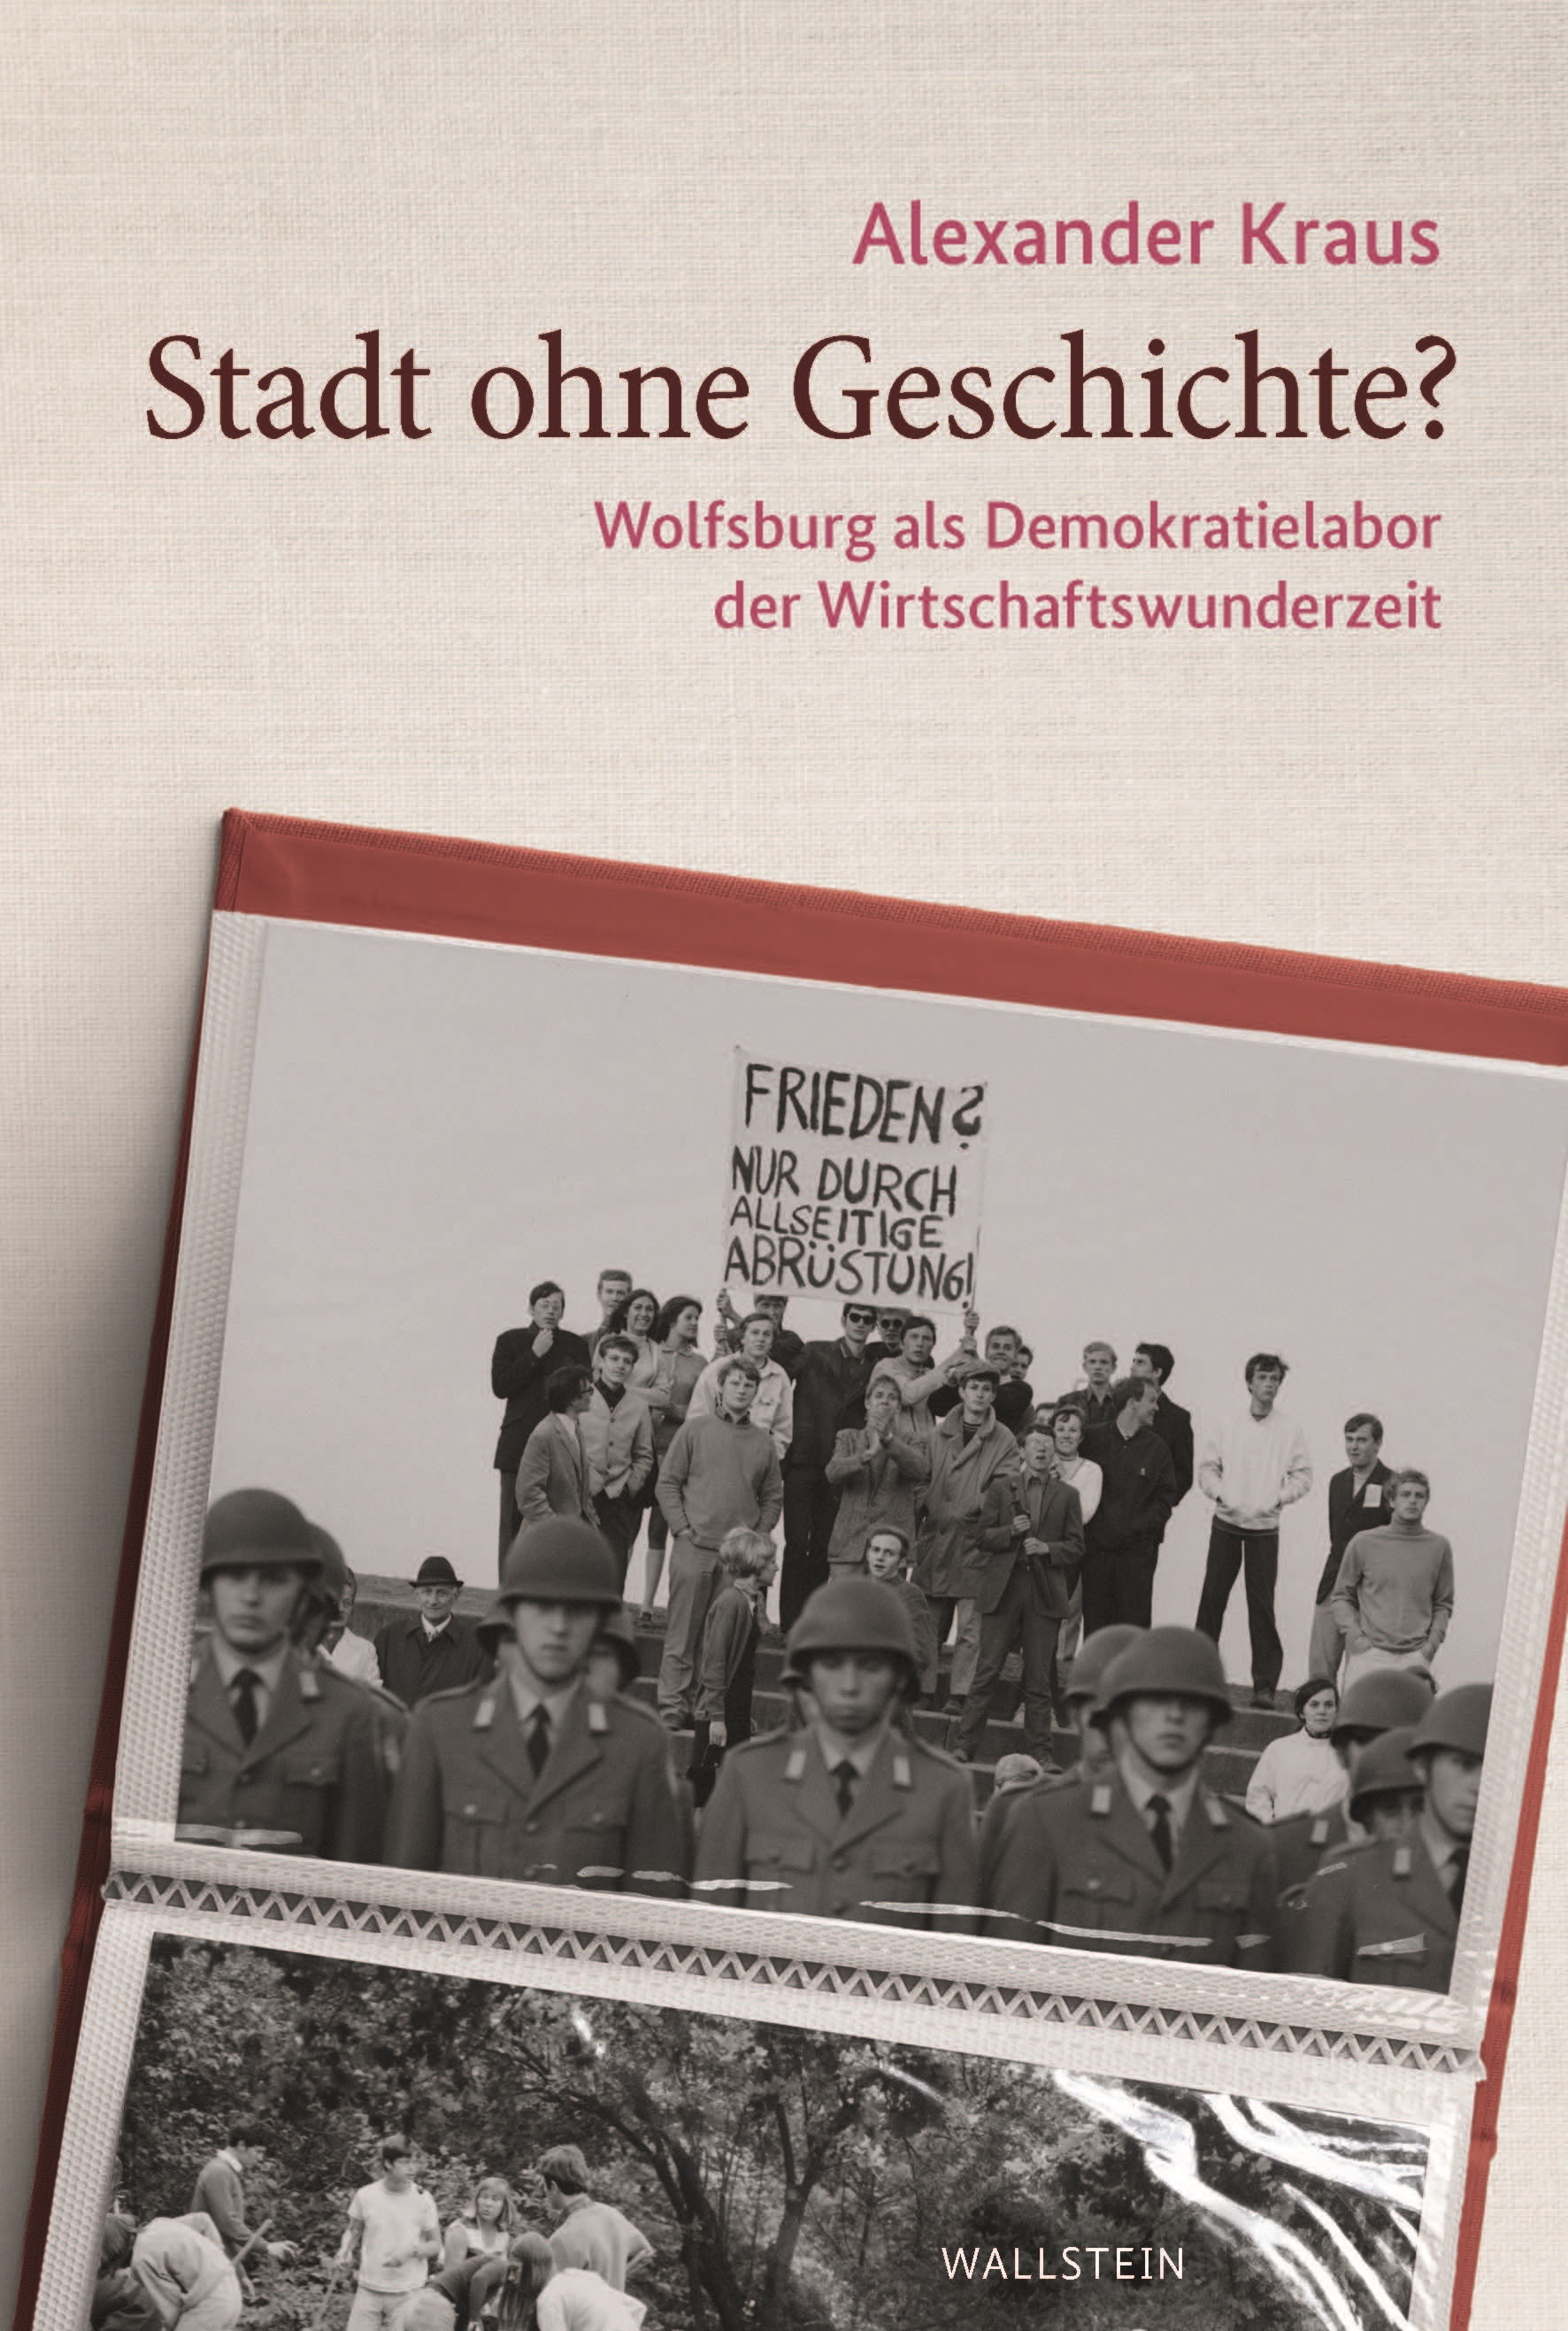 Titelblatt des Buchs "Stadt ohne Geschichte? Wolfsburg als Demokratielabor der Wirtschaftswunderzeit"